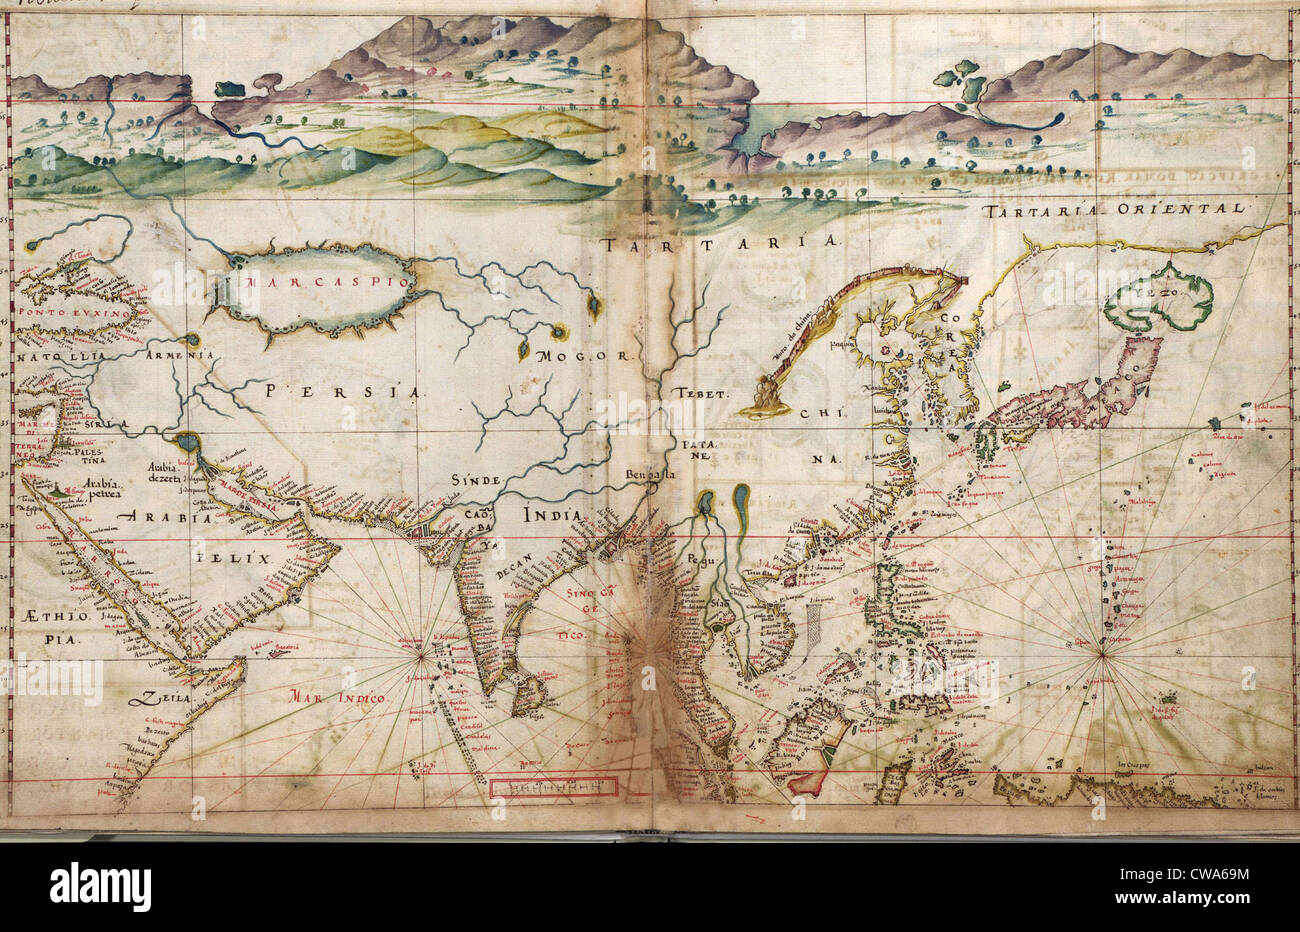 1630 Karten Portugiesisch, zeigt Details der asiatischen Küstenforts und Städte, von einem Jahrhundert von den portugiesischen Entdeckungen gesammelt Stockfoto